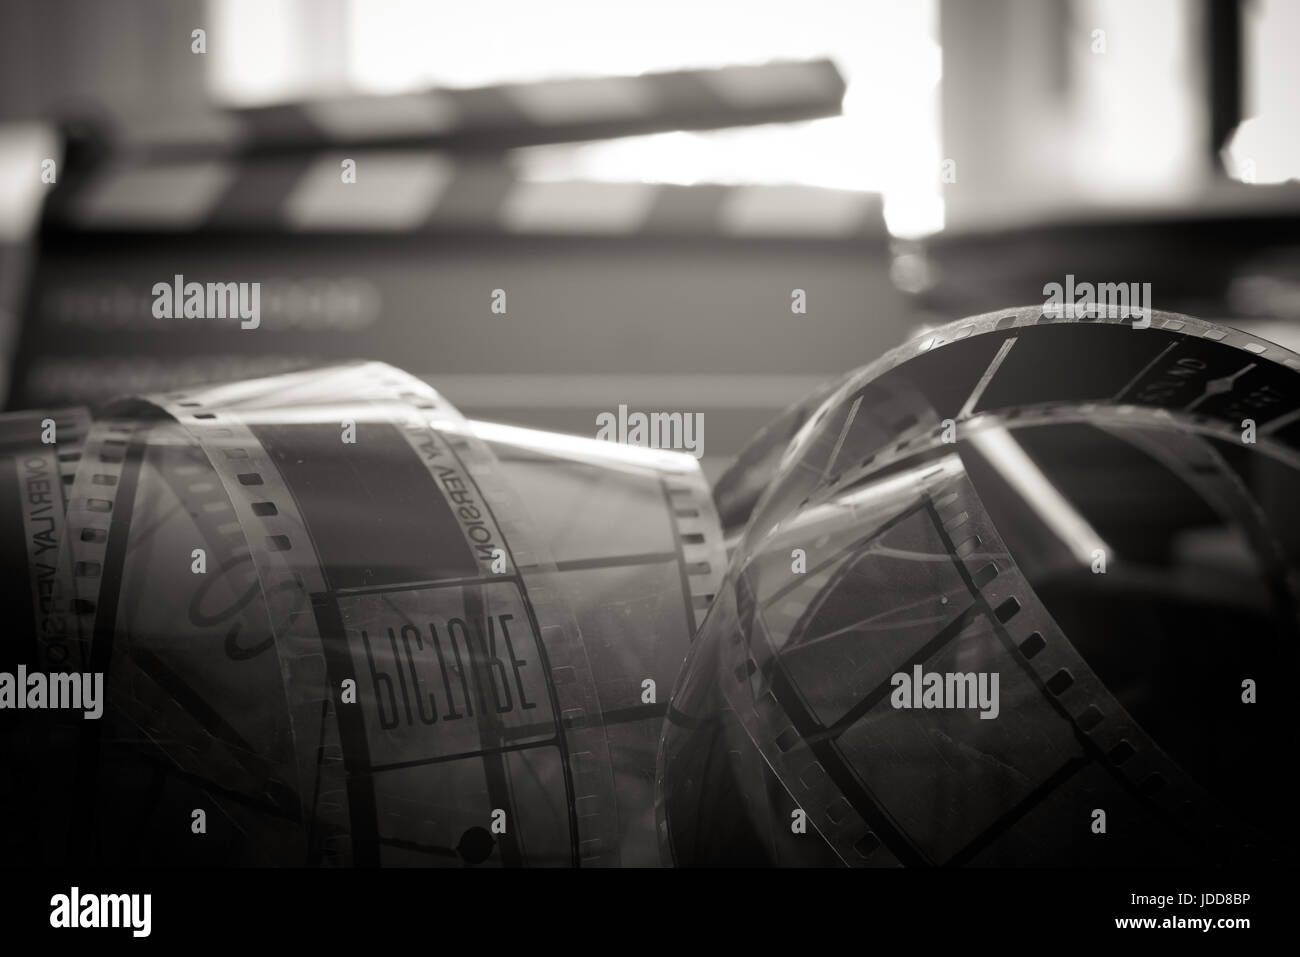 Alter Vintage 35 mm Filmrolle, alte Film-Symbol, Header Filmstreifen entrollte schließen, schwarz-weiß, defokussierten Clapper Board im Hintergrund Stockfoto